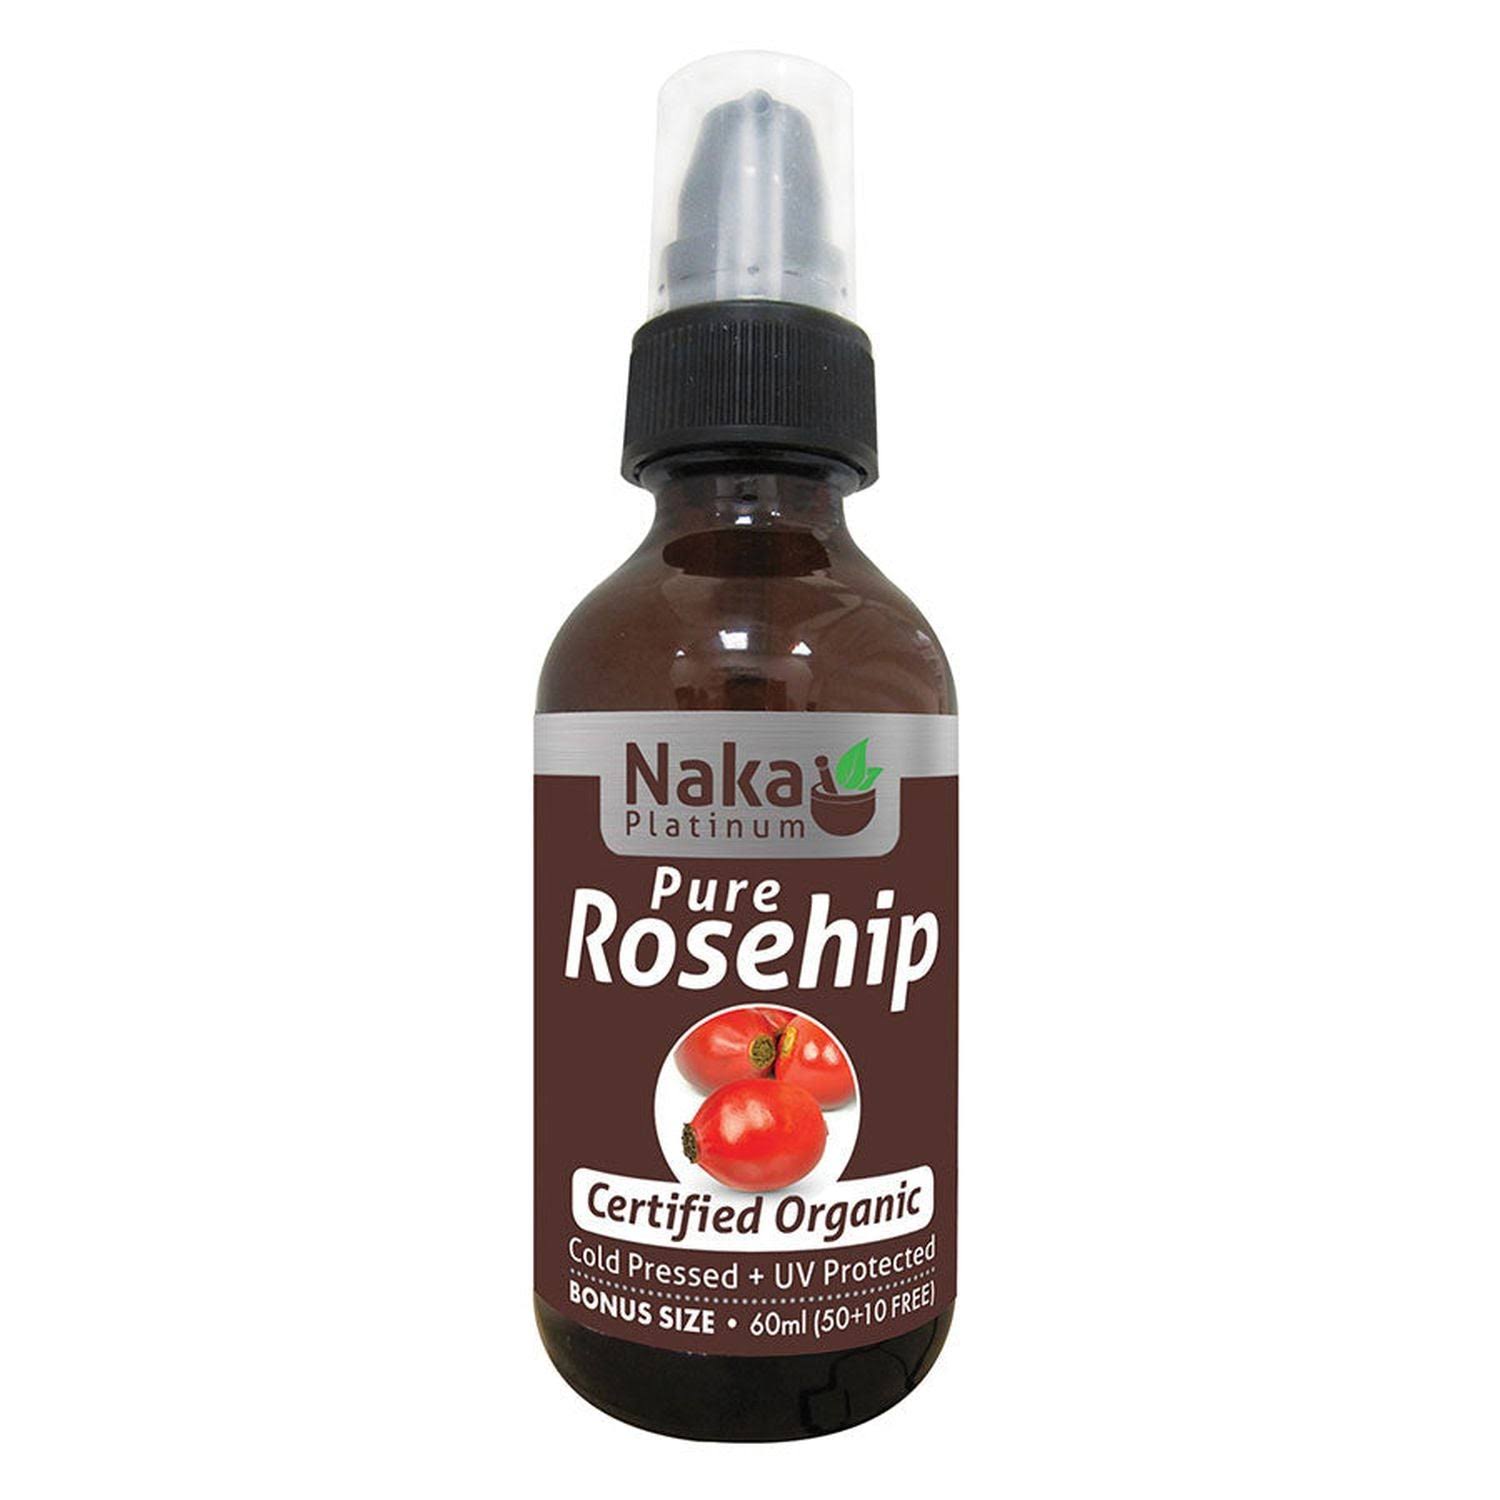 Naka 100% Pure Rosehip Oil - 50 + 10ml Bonus